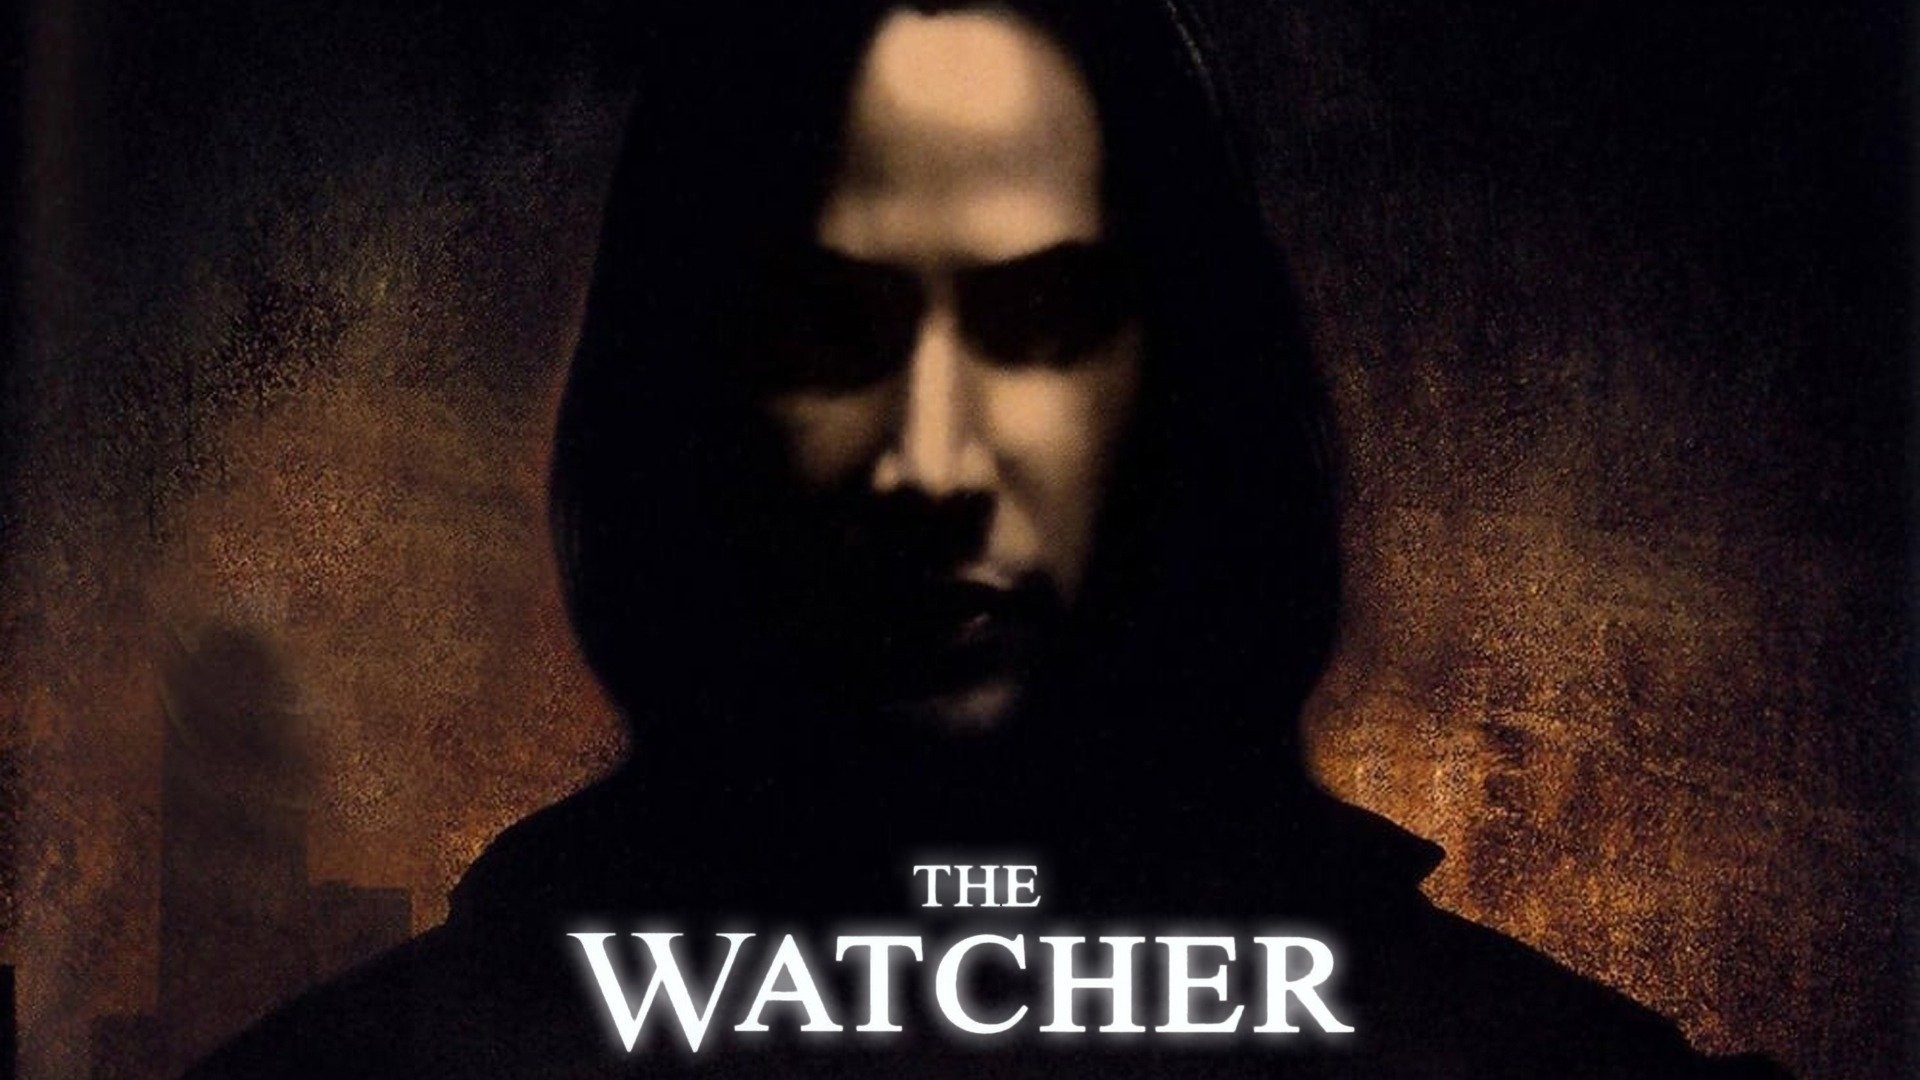 Watcher - Official Trailer, HD